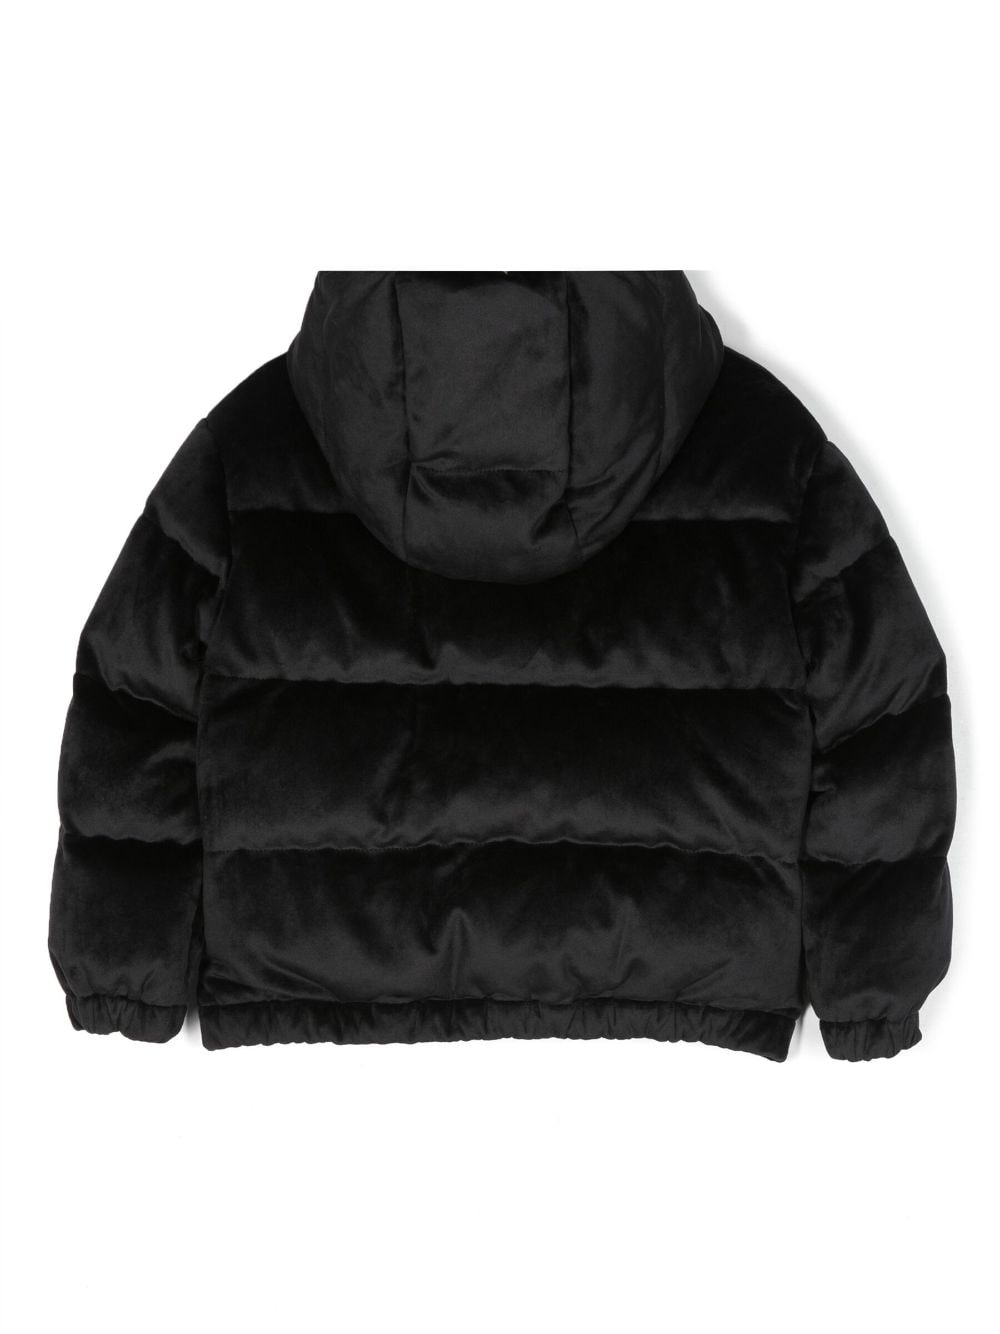 Daos black velvet jacket for girls